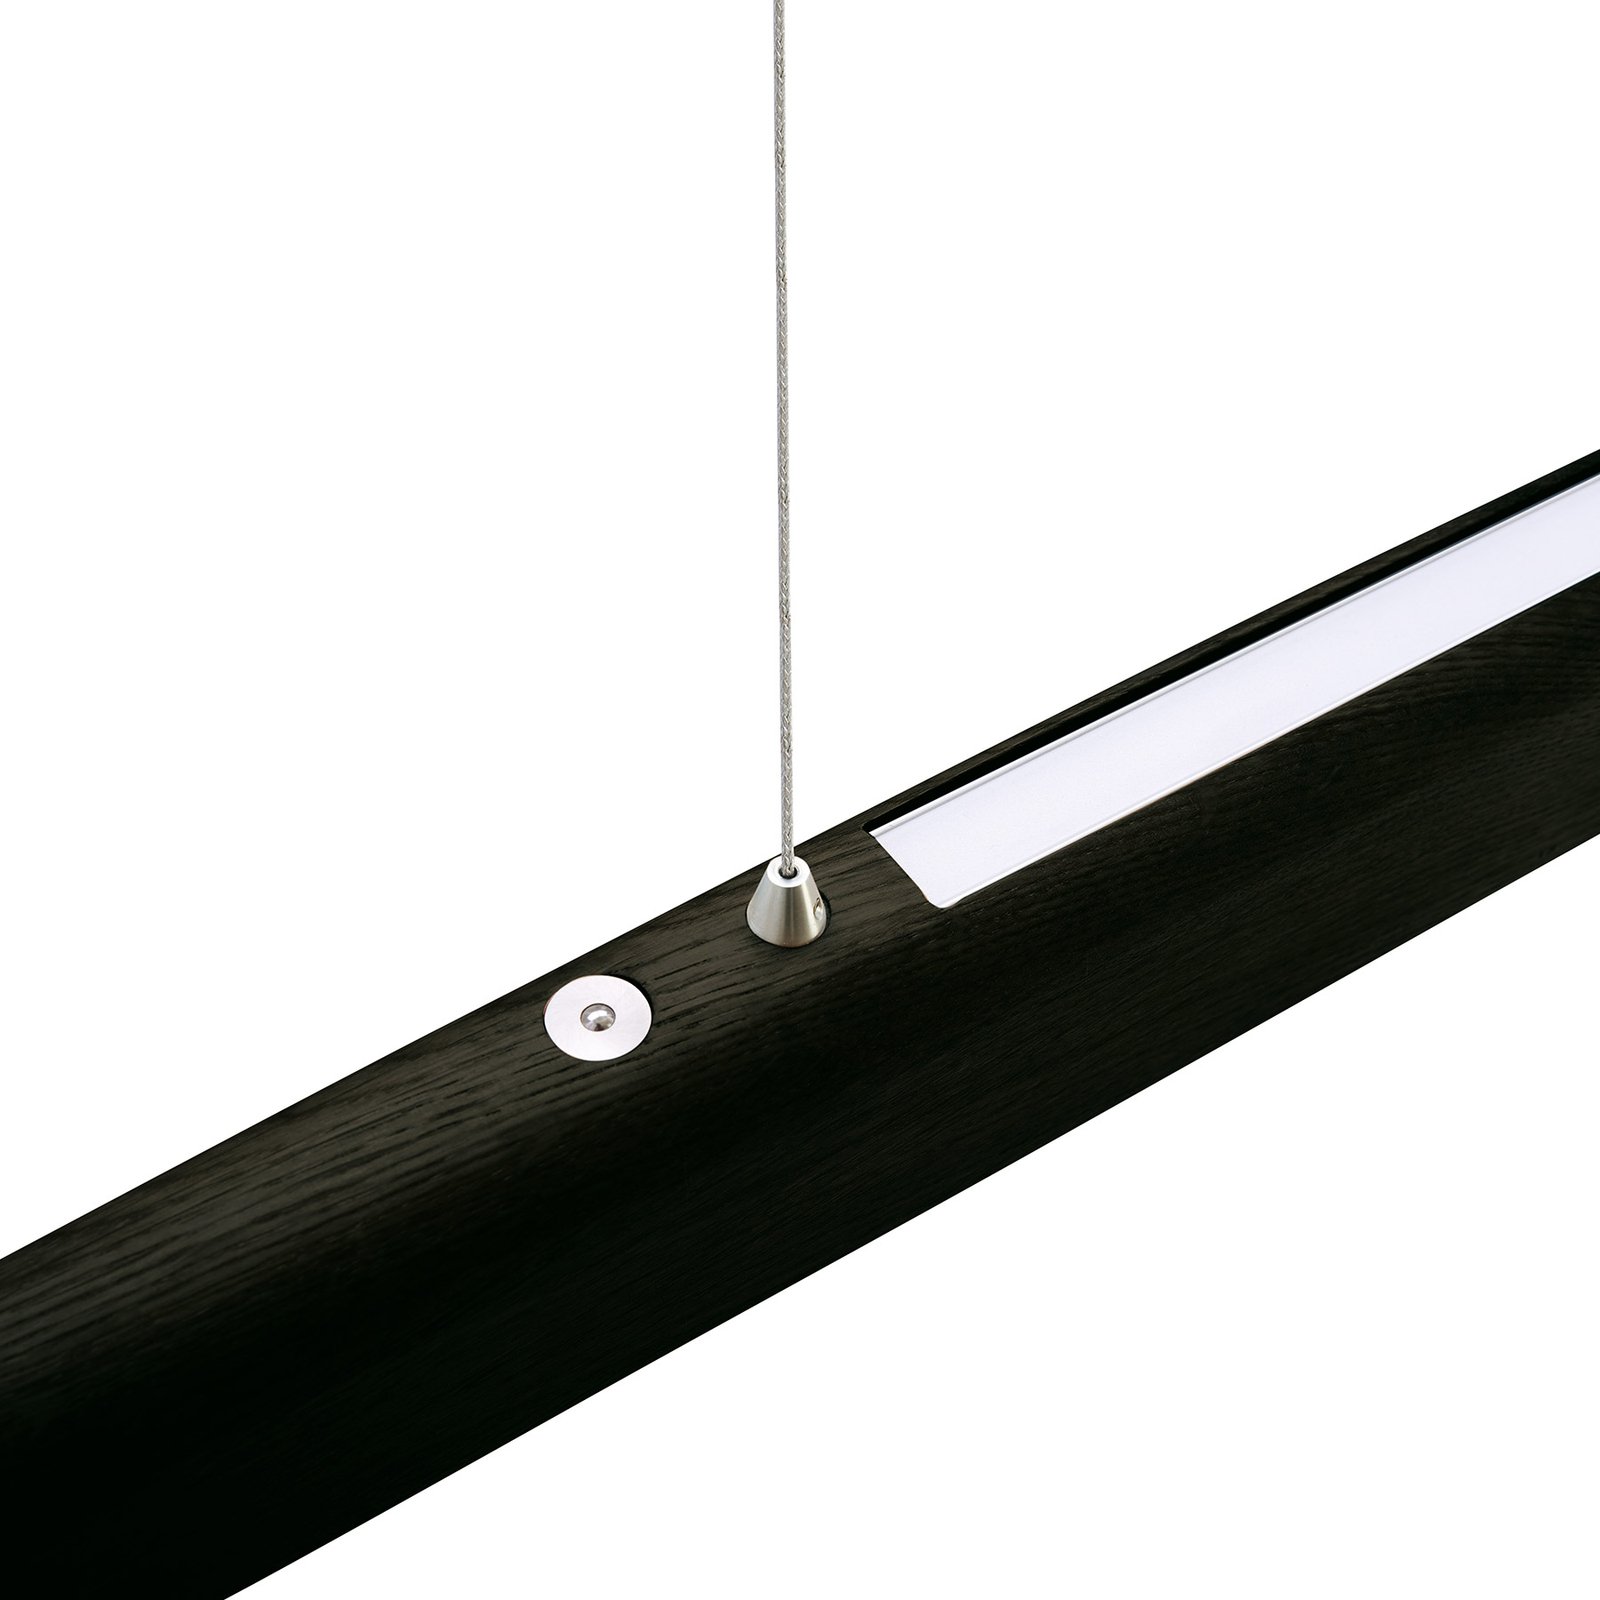 HerzBlut Arco LED-Hängelampe asteiche kohle 130cm